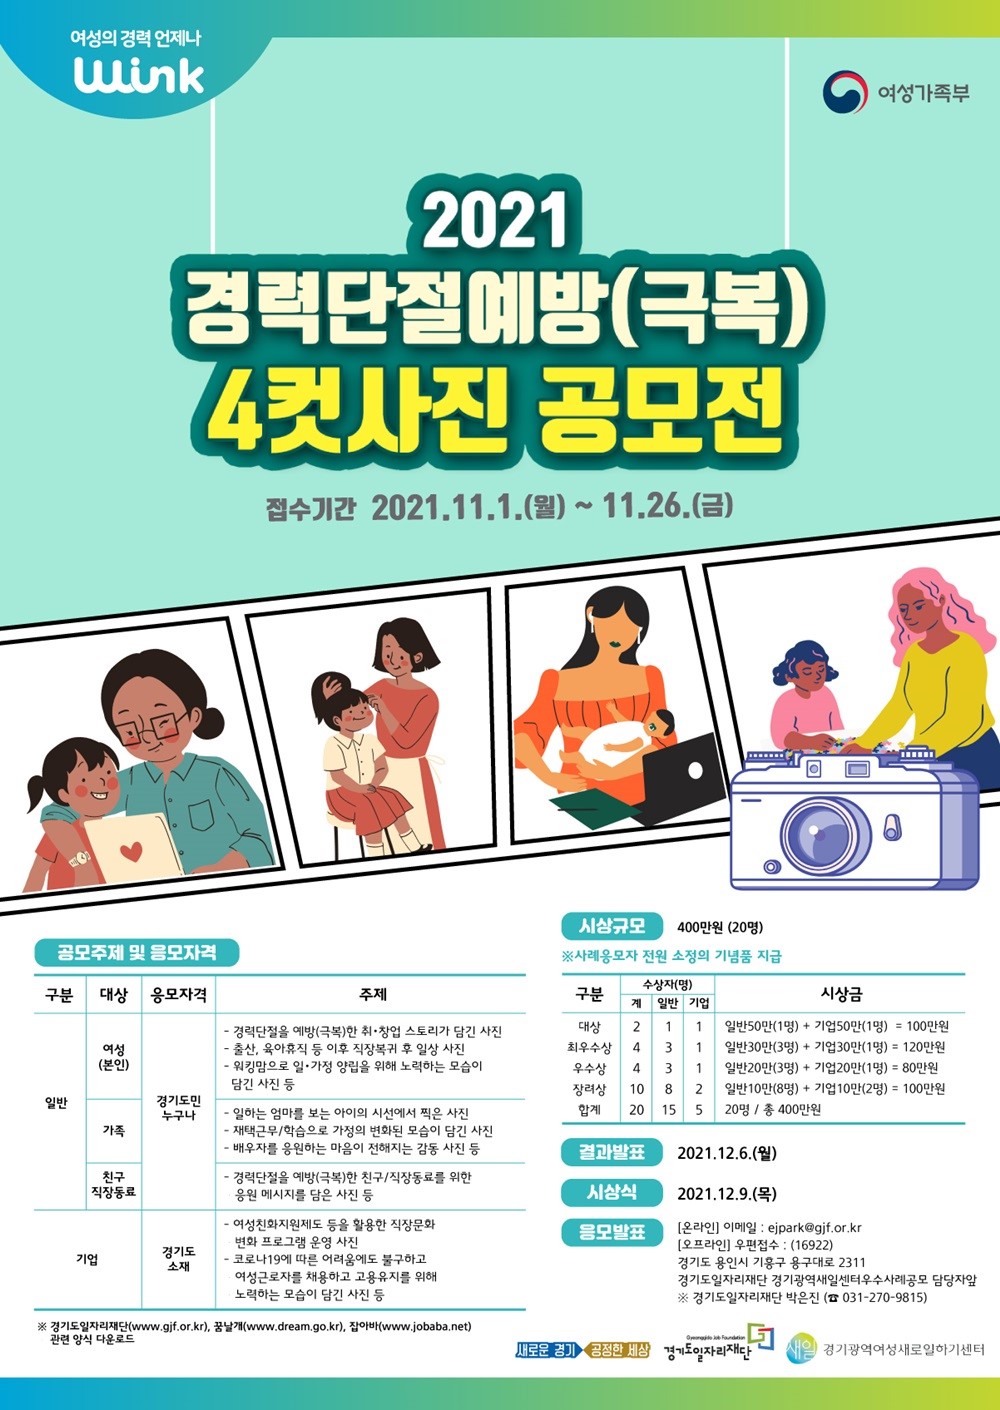 ▲ 경기도일자리재단 ‘2021 경력단절예방 우수사례 공모’ 안내문. ⓒ 뉴스피크